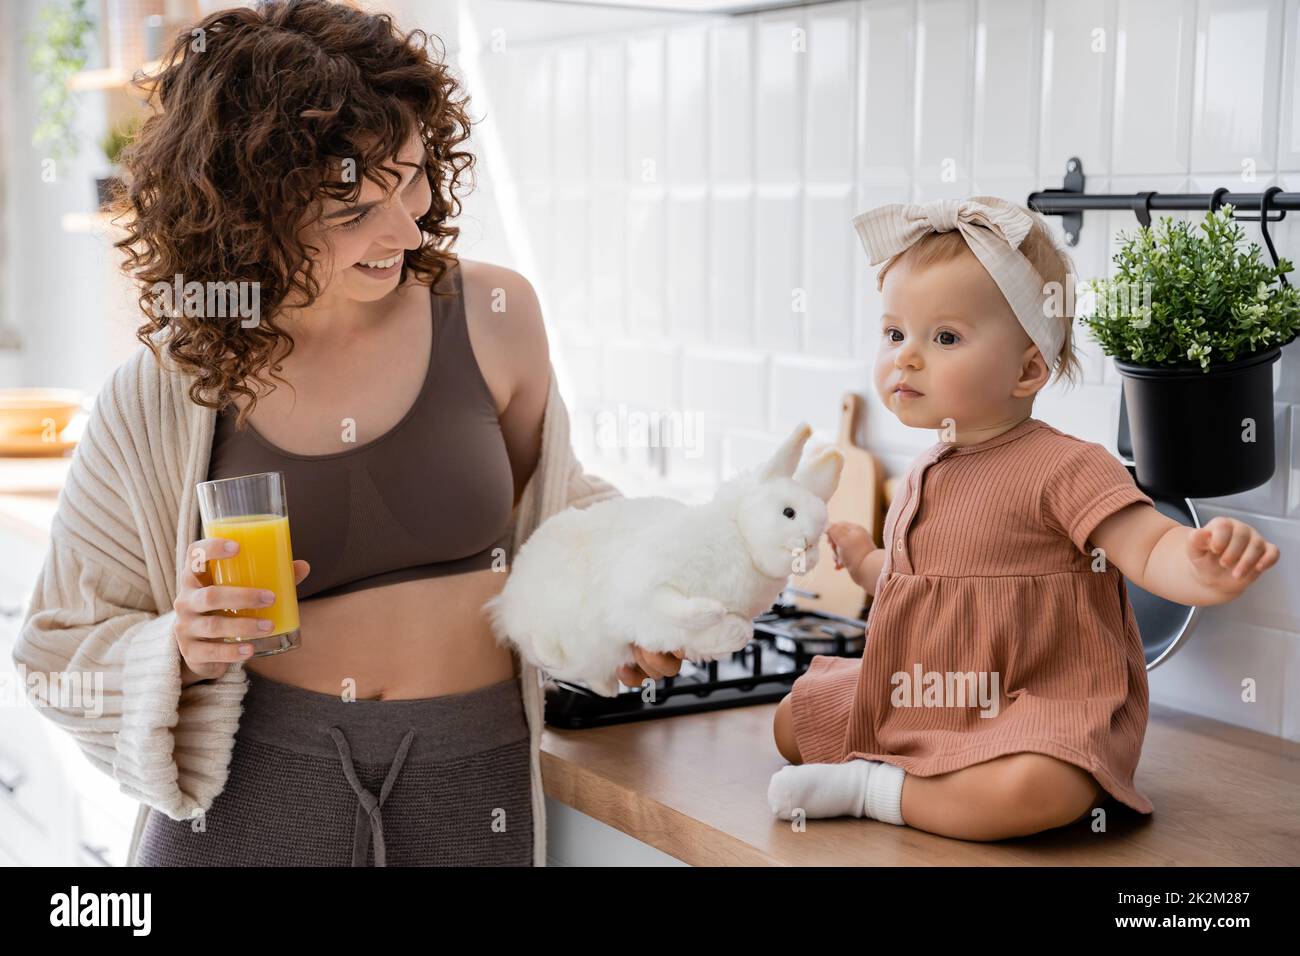 niña sentada en la encimera de la cocina cerca de madre alegre con un vaso de jugo de naranja y un juguete suave, imagen de archivo Foto de stock